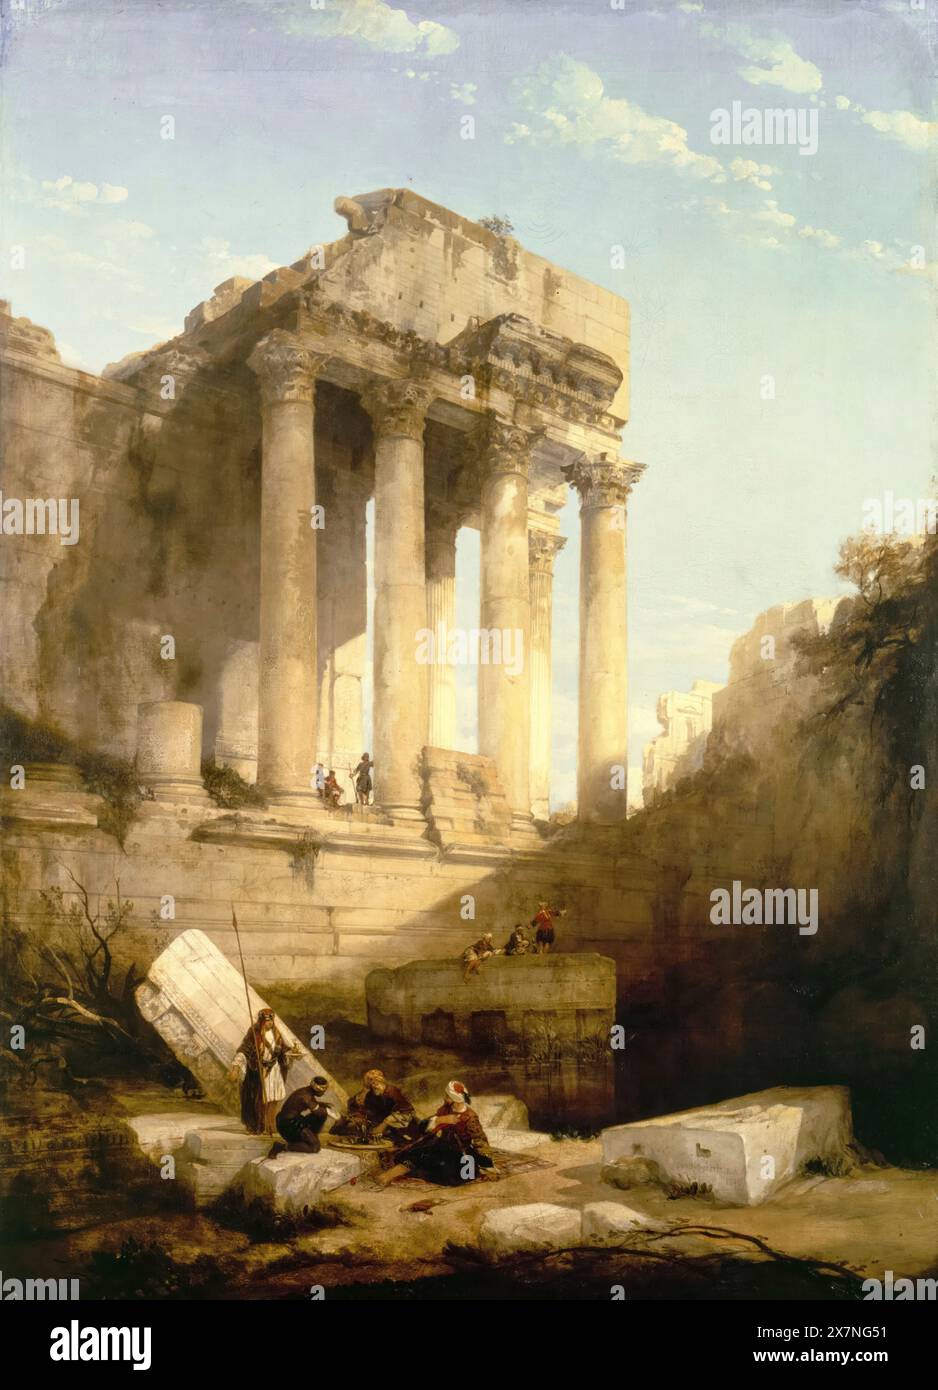 David Roberts, Baalbec: Ruinen des Tempels von Bacchus, Gemälde in Öl auf Leinwand, 1840 Stockfoto